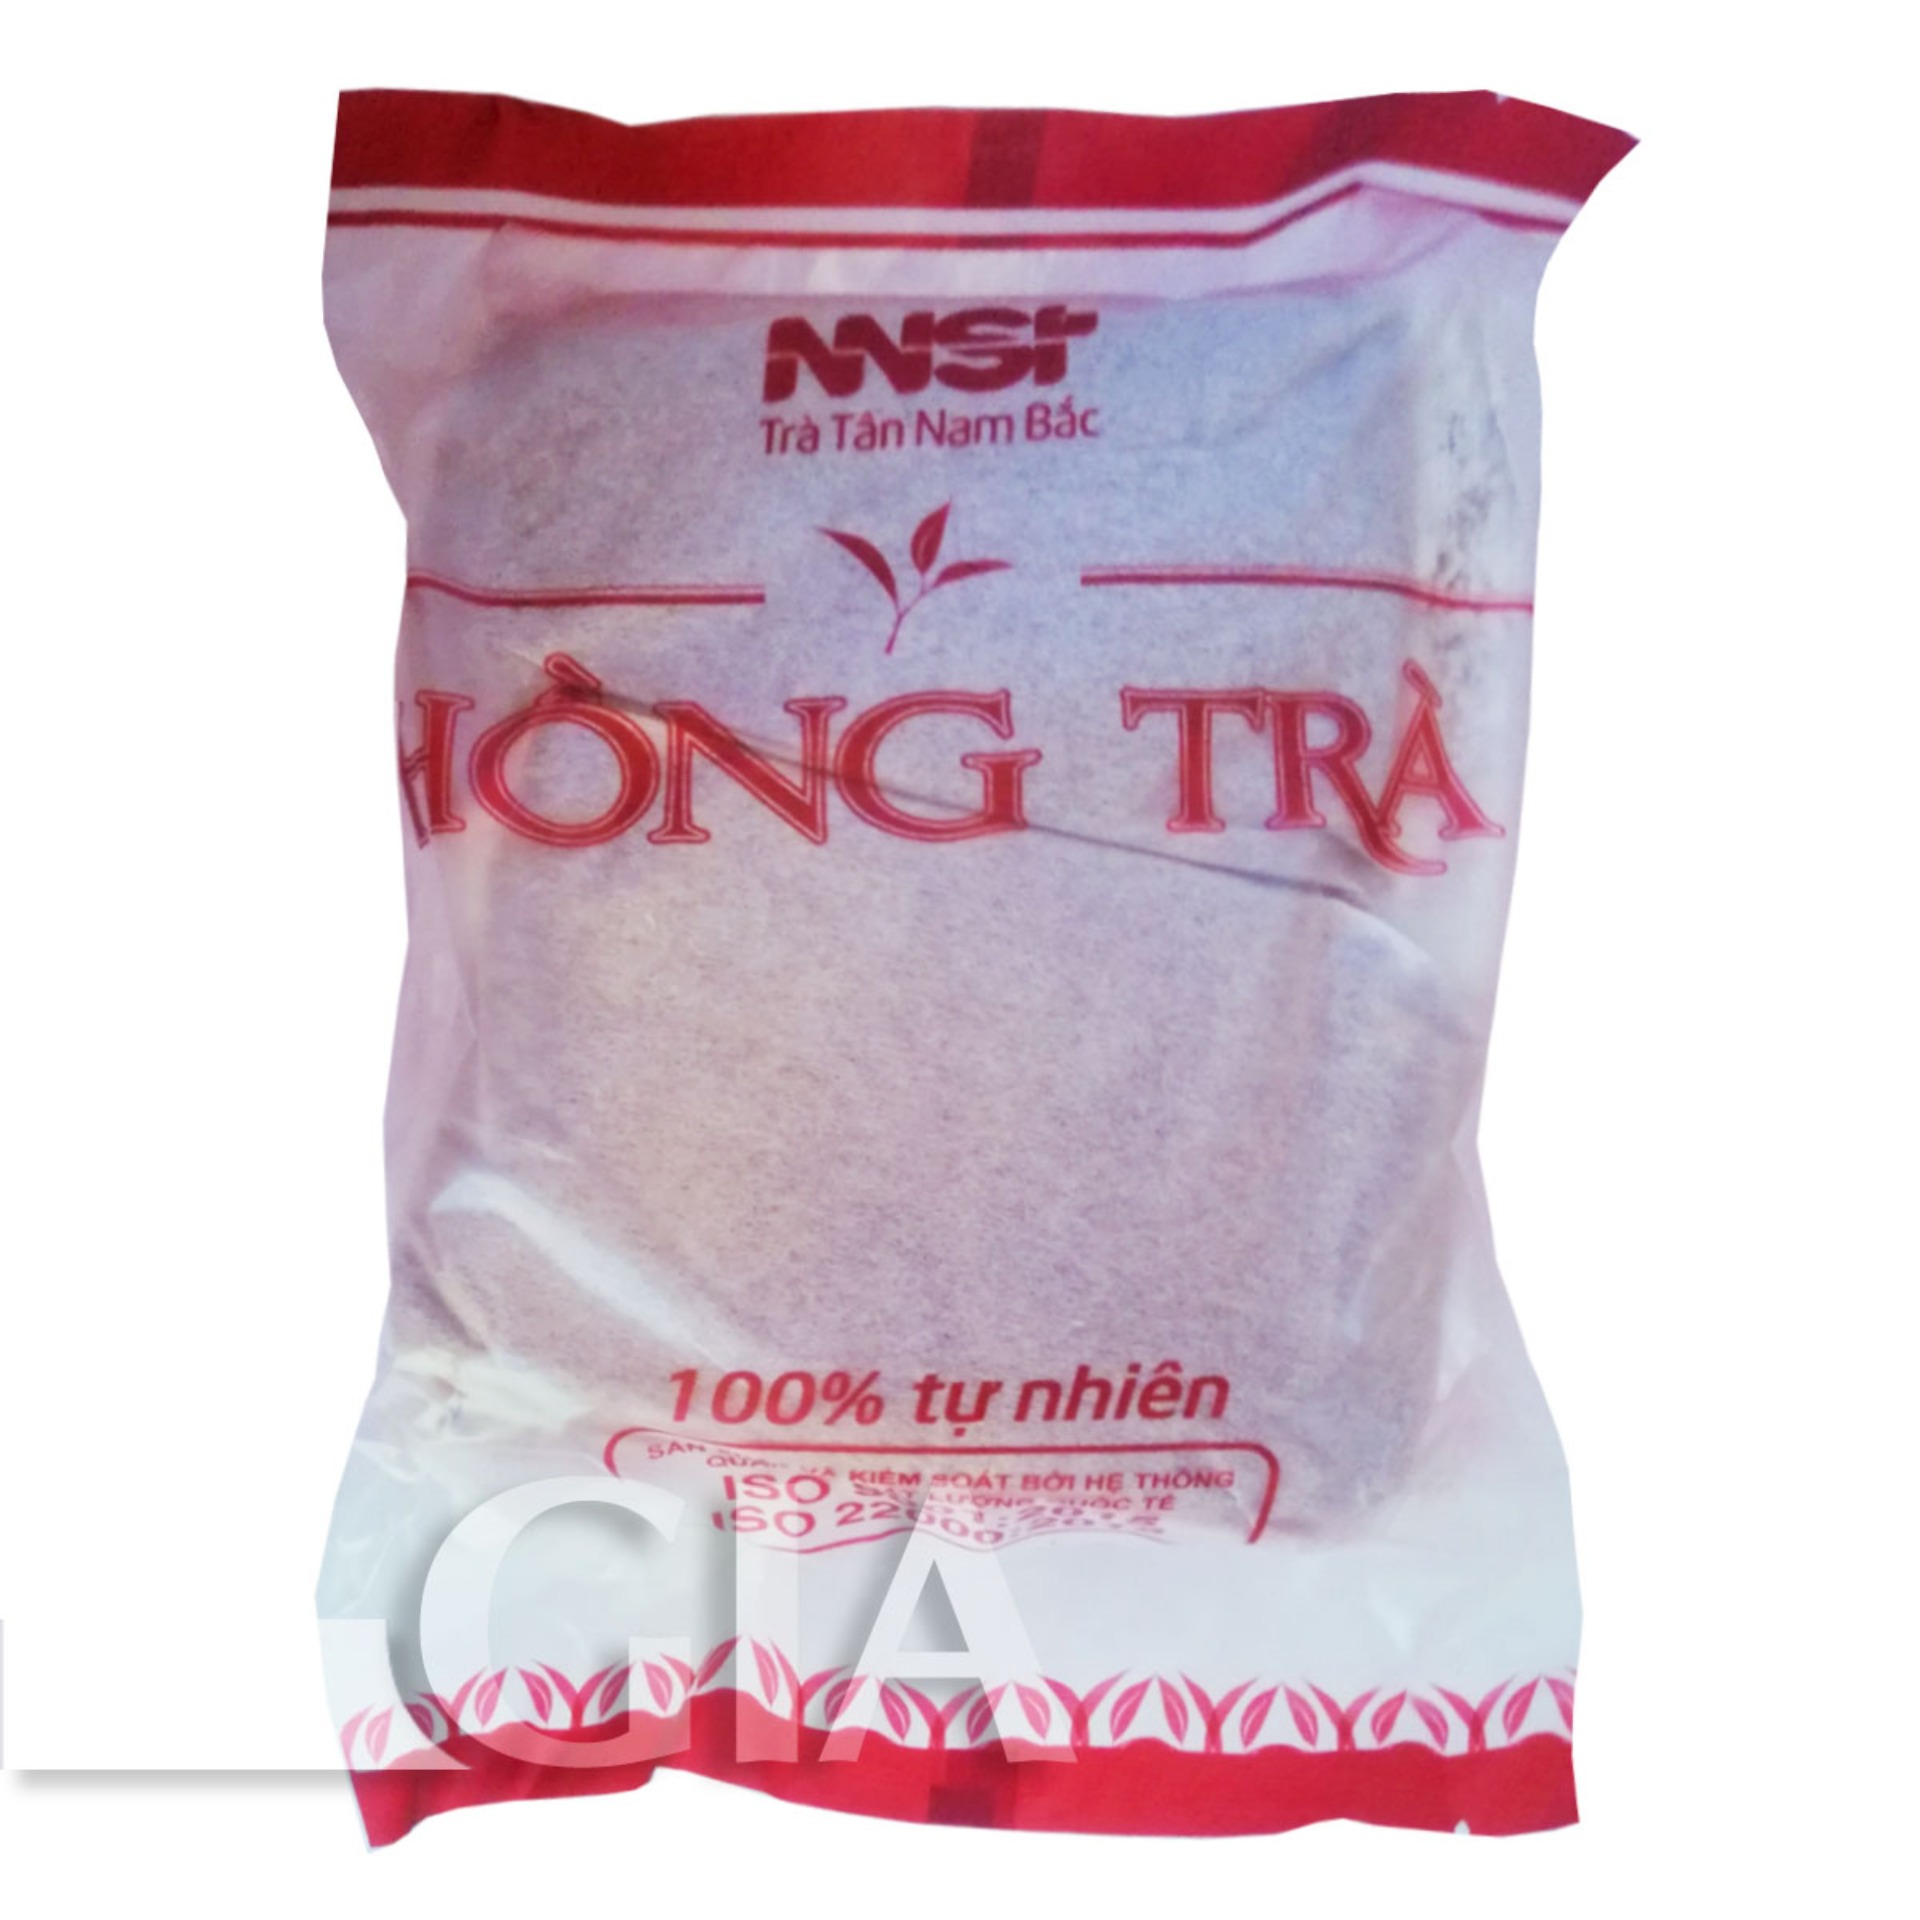 Hồng Trà Pha Trà Sữa Túi Lọc Tân Nam Bắc Gói 300g